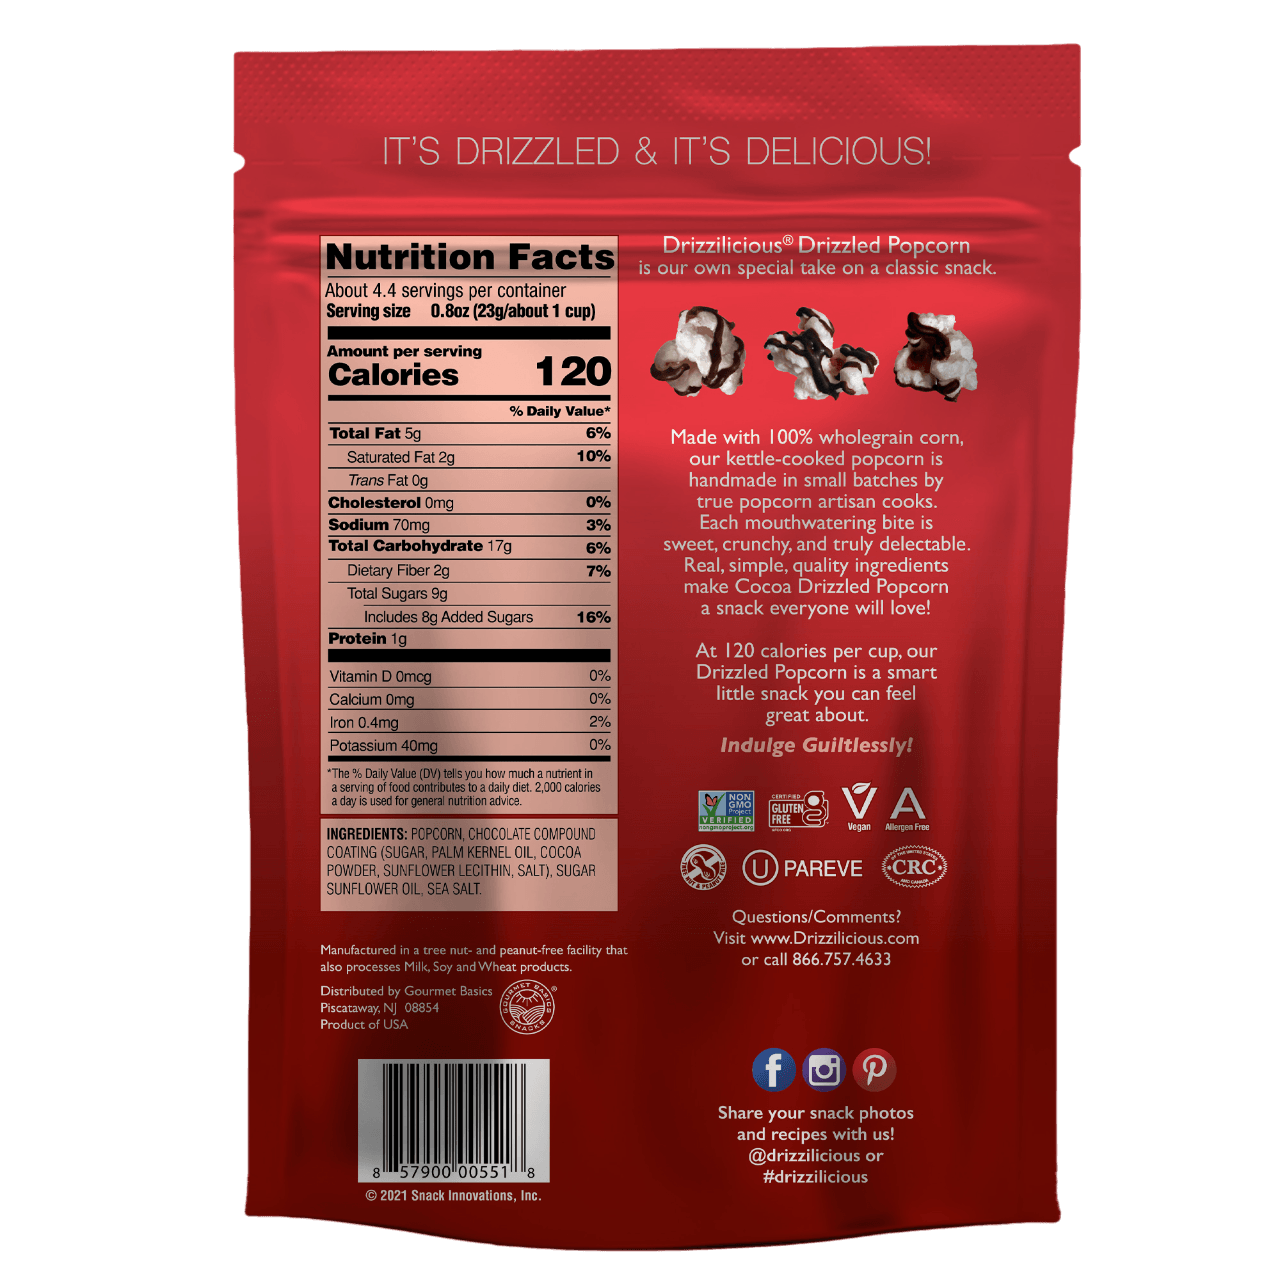 Dark Cocoa Popcorn 3.6oz - Drizzilicious